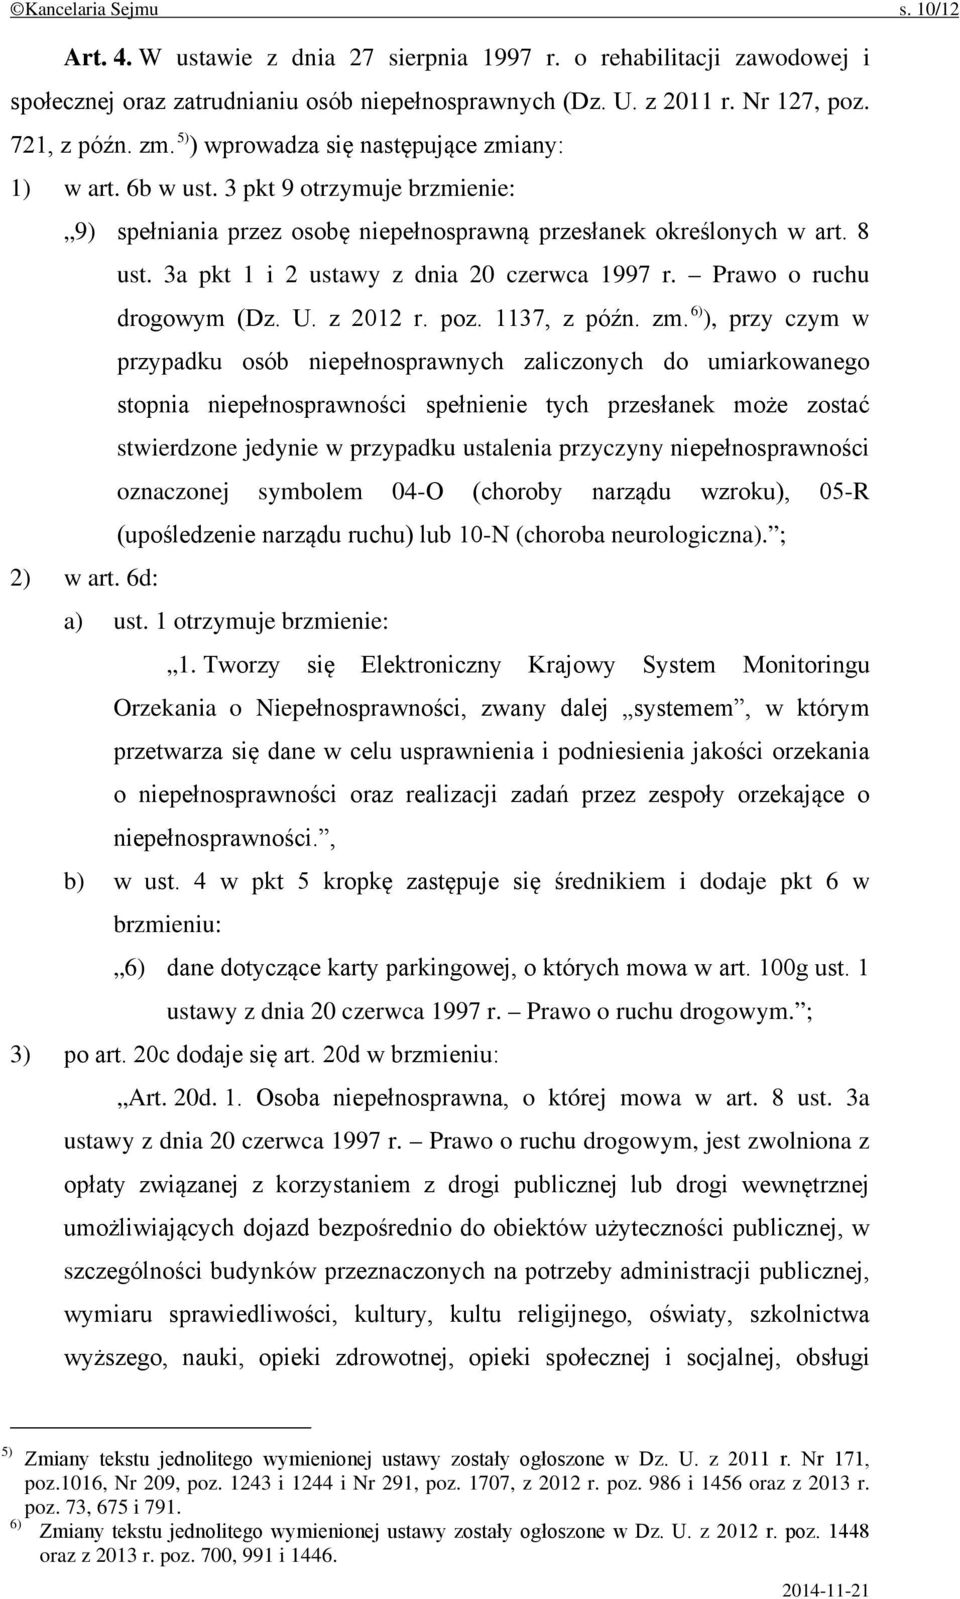 3a pkt 1 i 2 ustawy z dnia 20 czerwca 1997 r. Prawo o ruchu drogowym (Dz. U. z 2012 r. poz. 1137, z późn. zm.